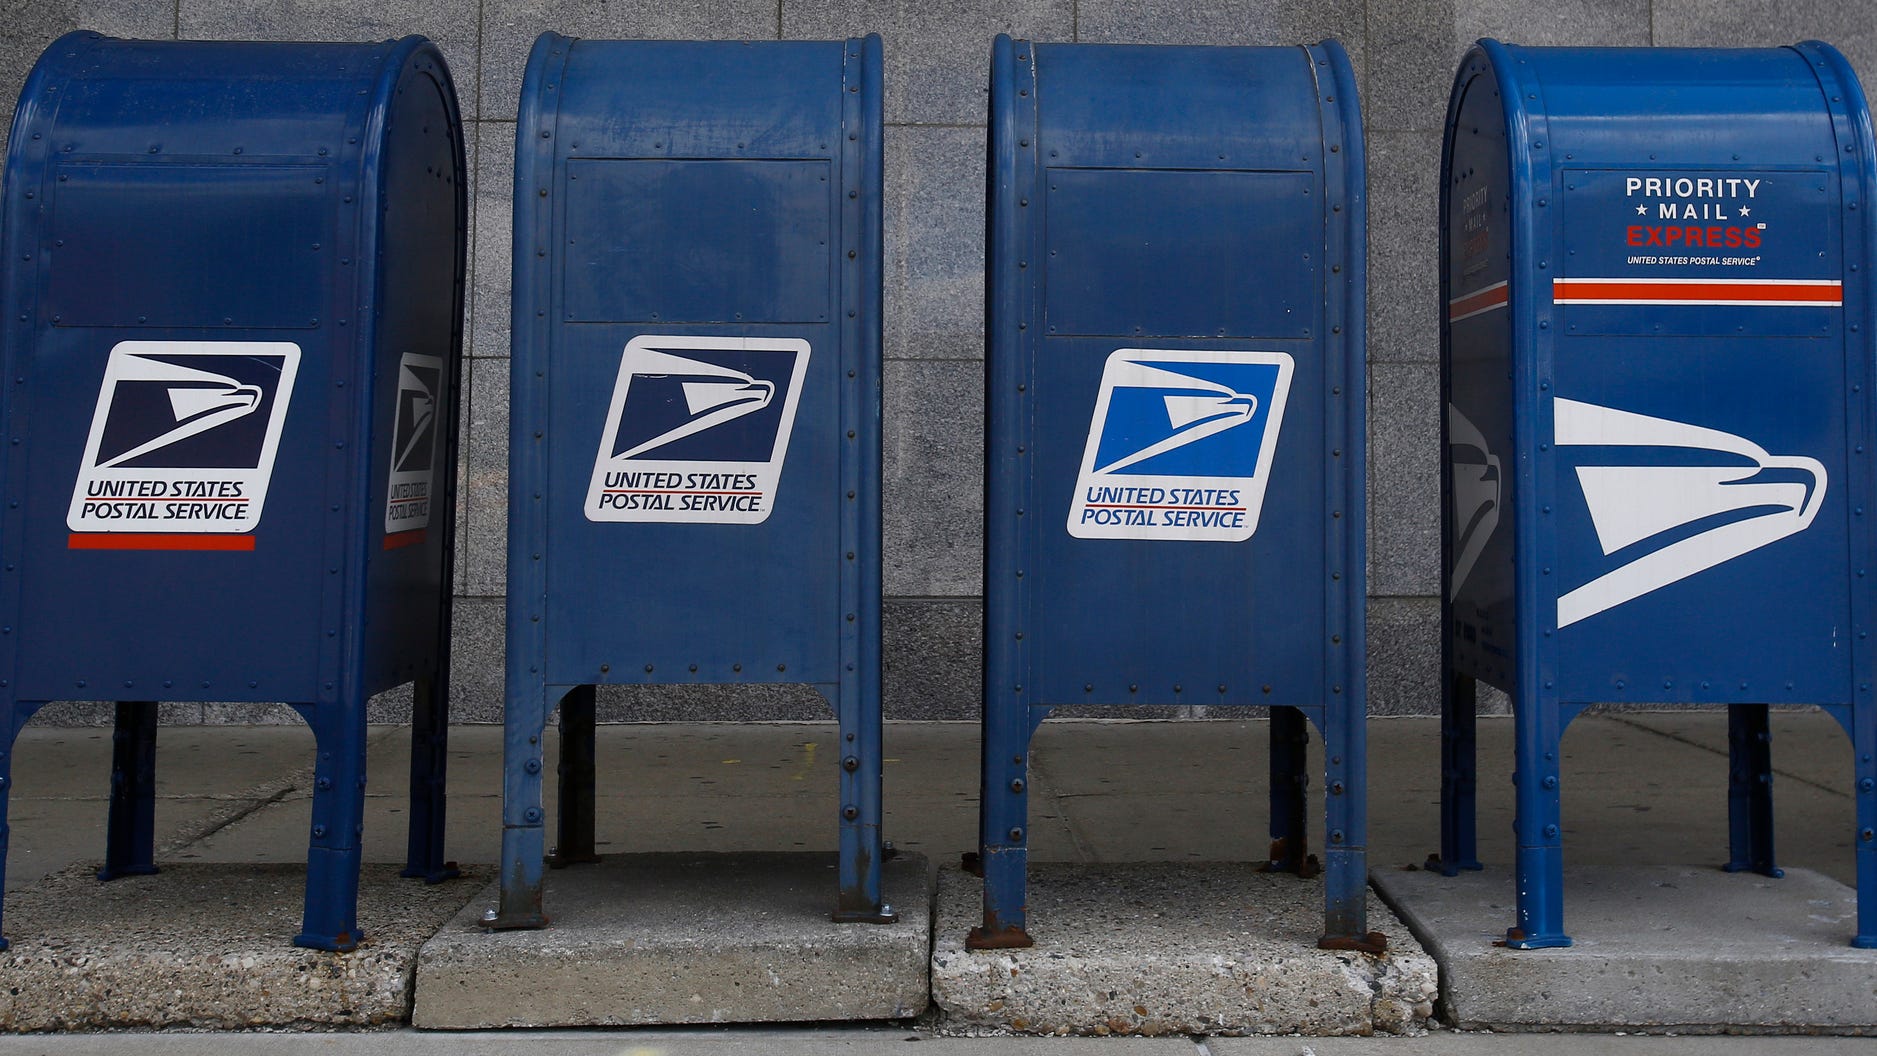 Introducir 31+ imagen post office mailbox